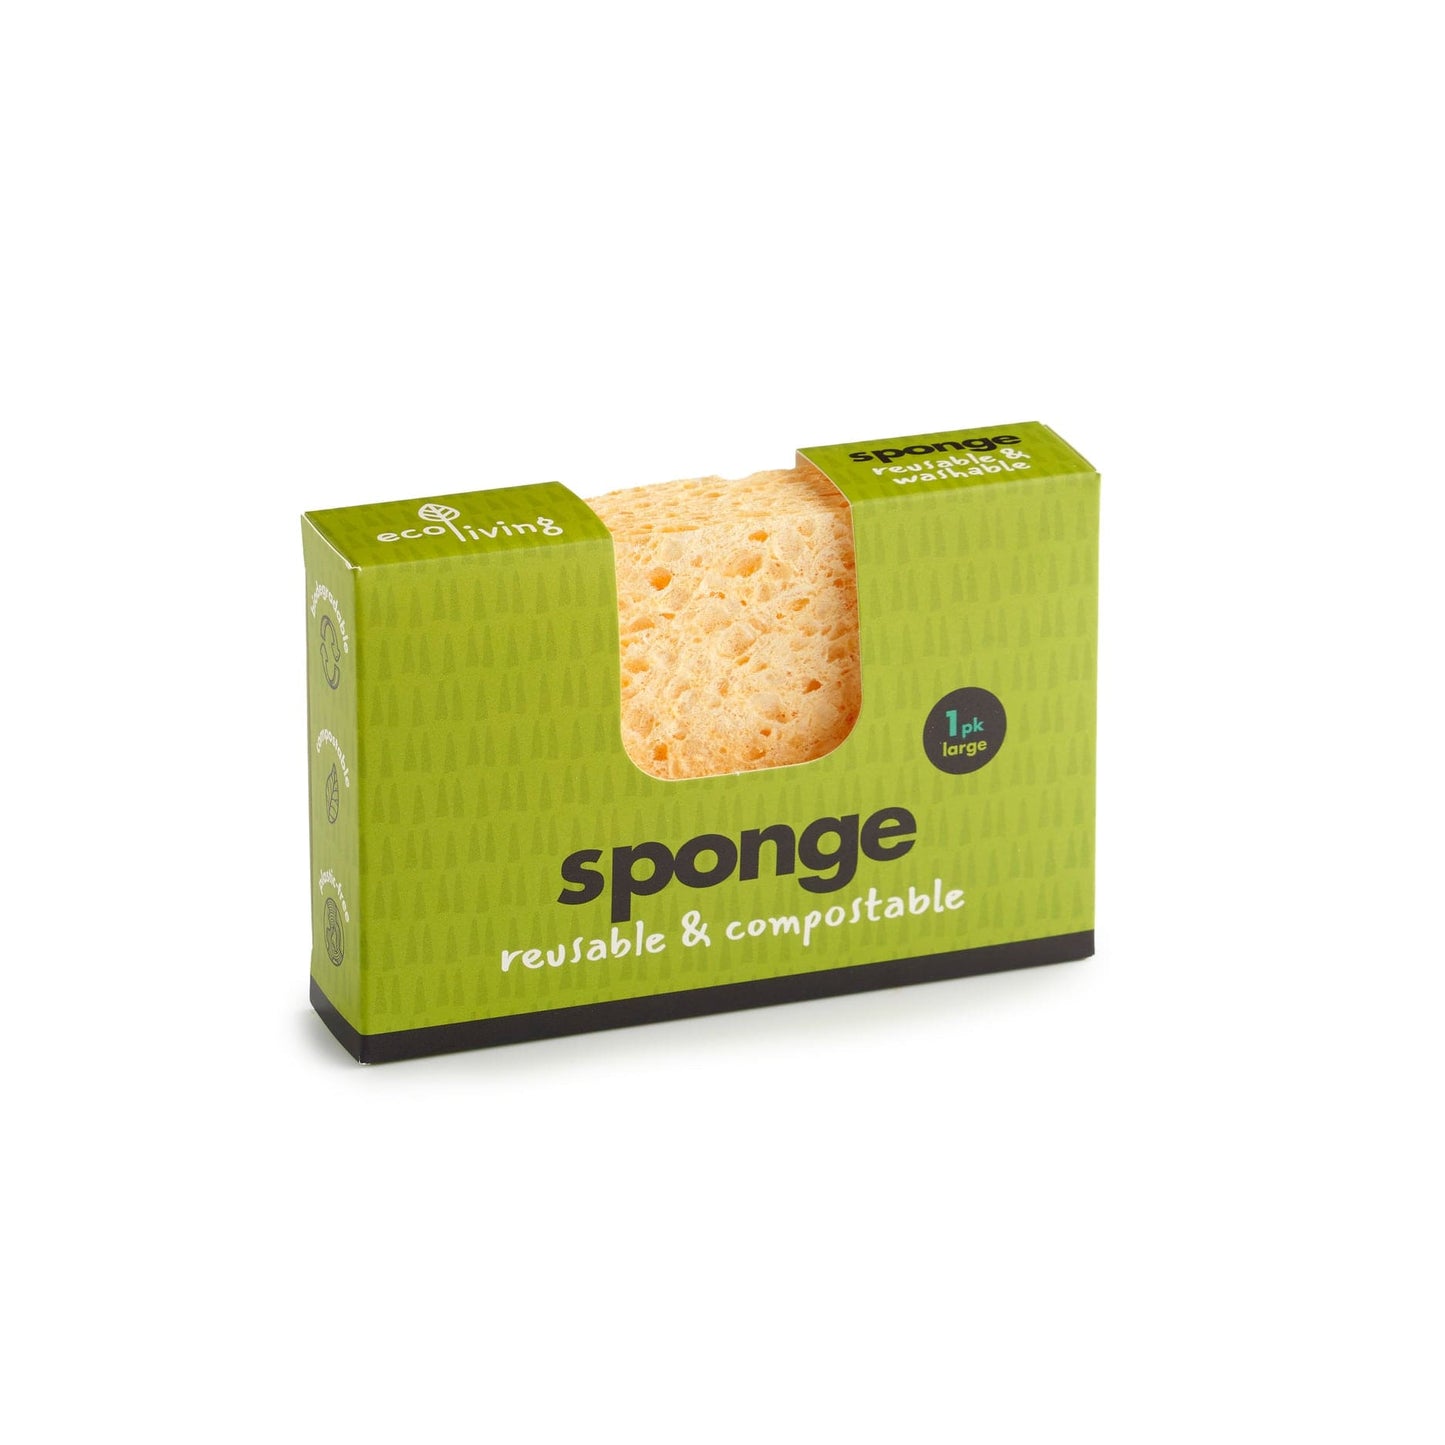 Compostable UK Sponge - www.thecotswoldecocompany.co.uk